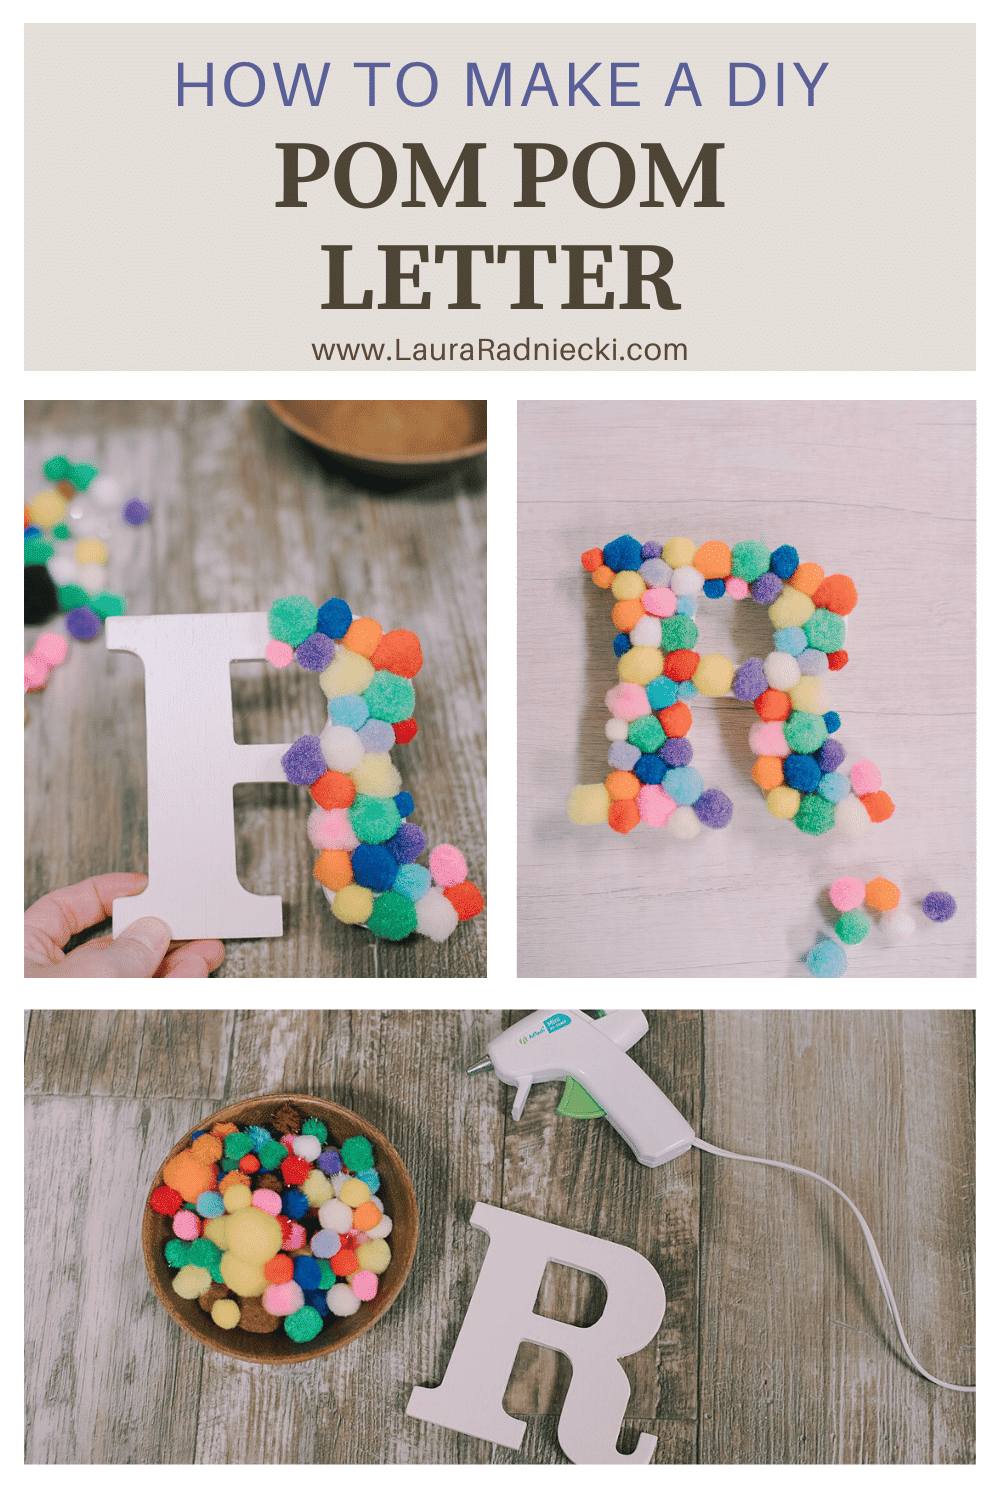 How to Make a Pom Pom Letter R